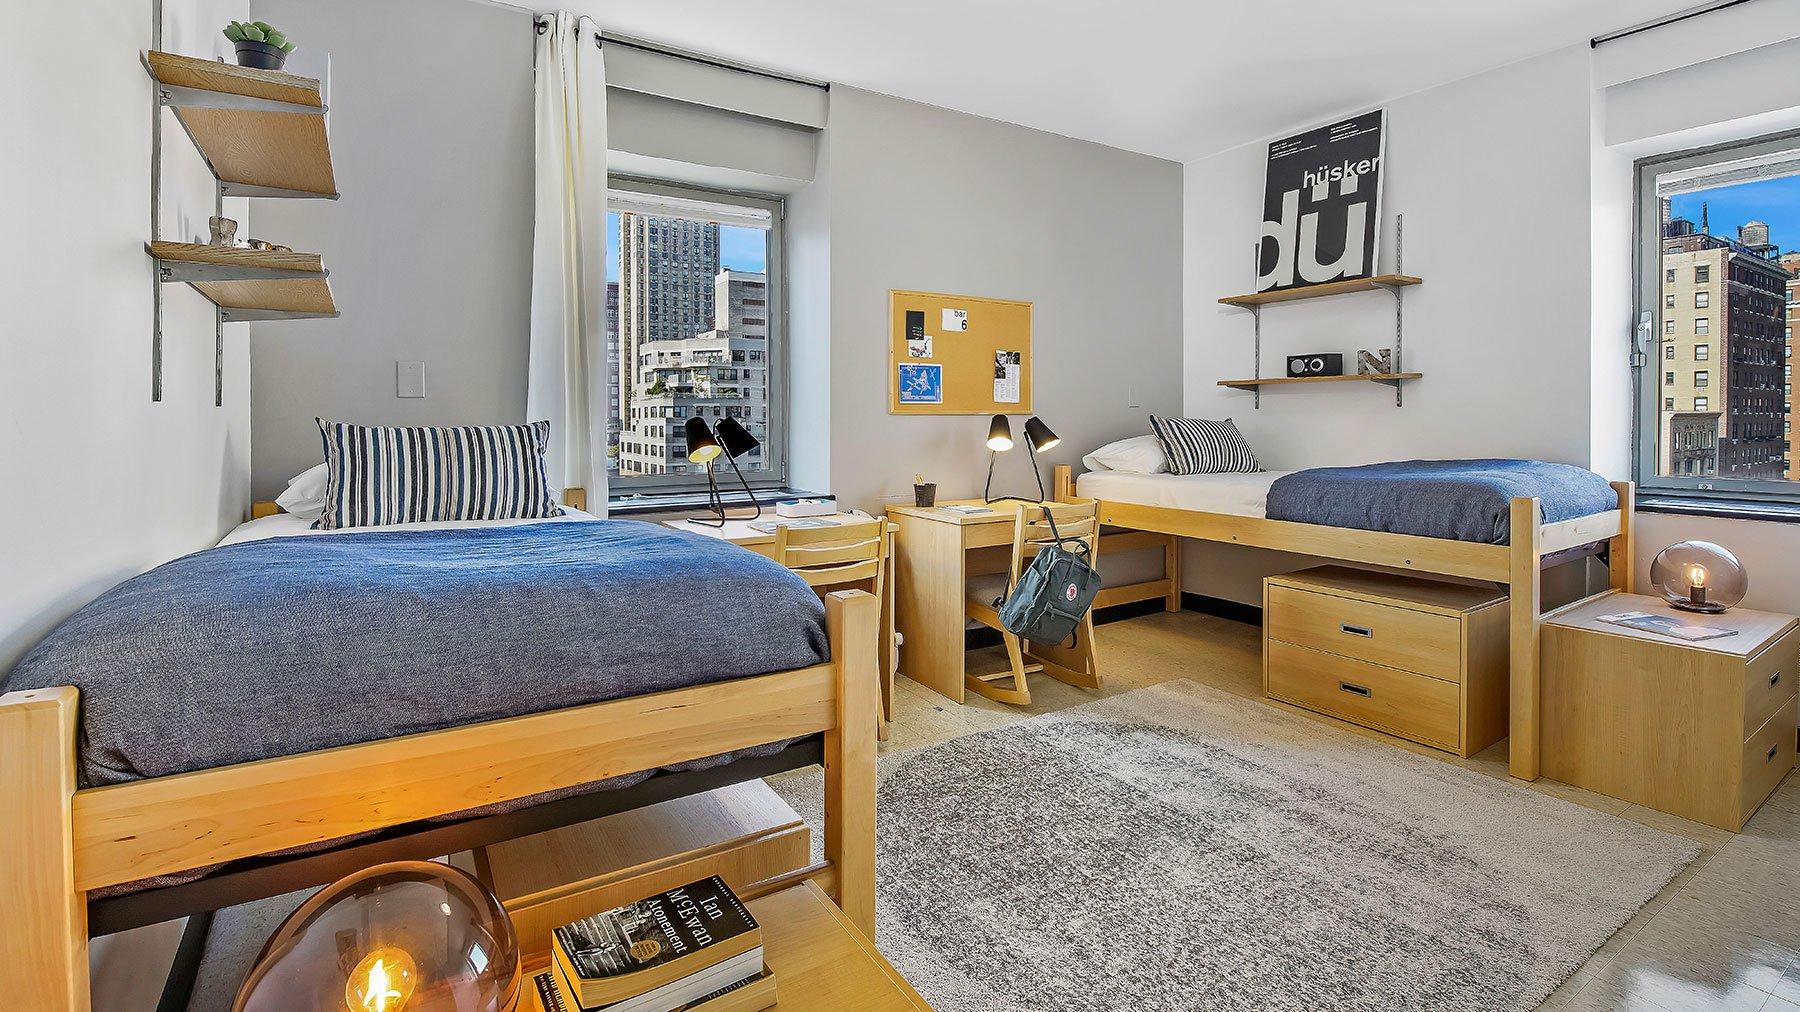 Cheap 4b2b homes for students near Manhattan